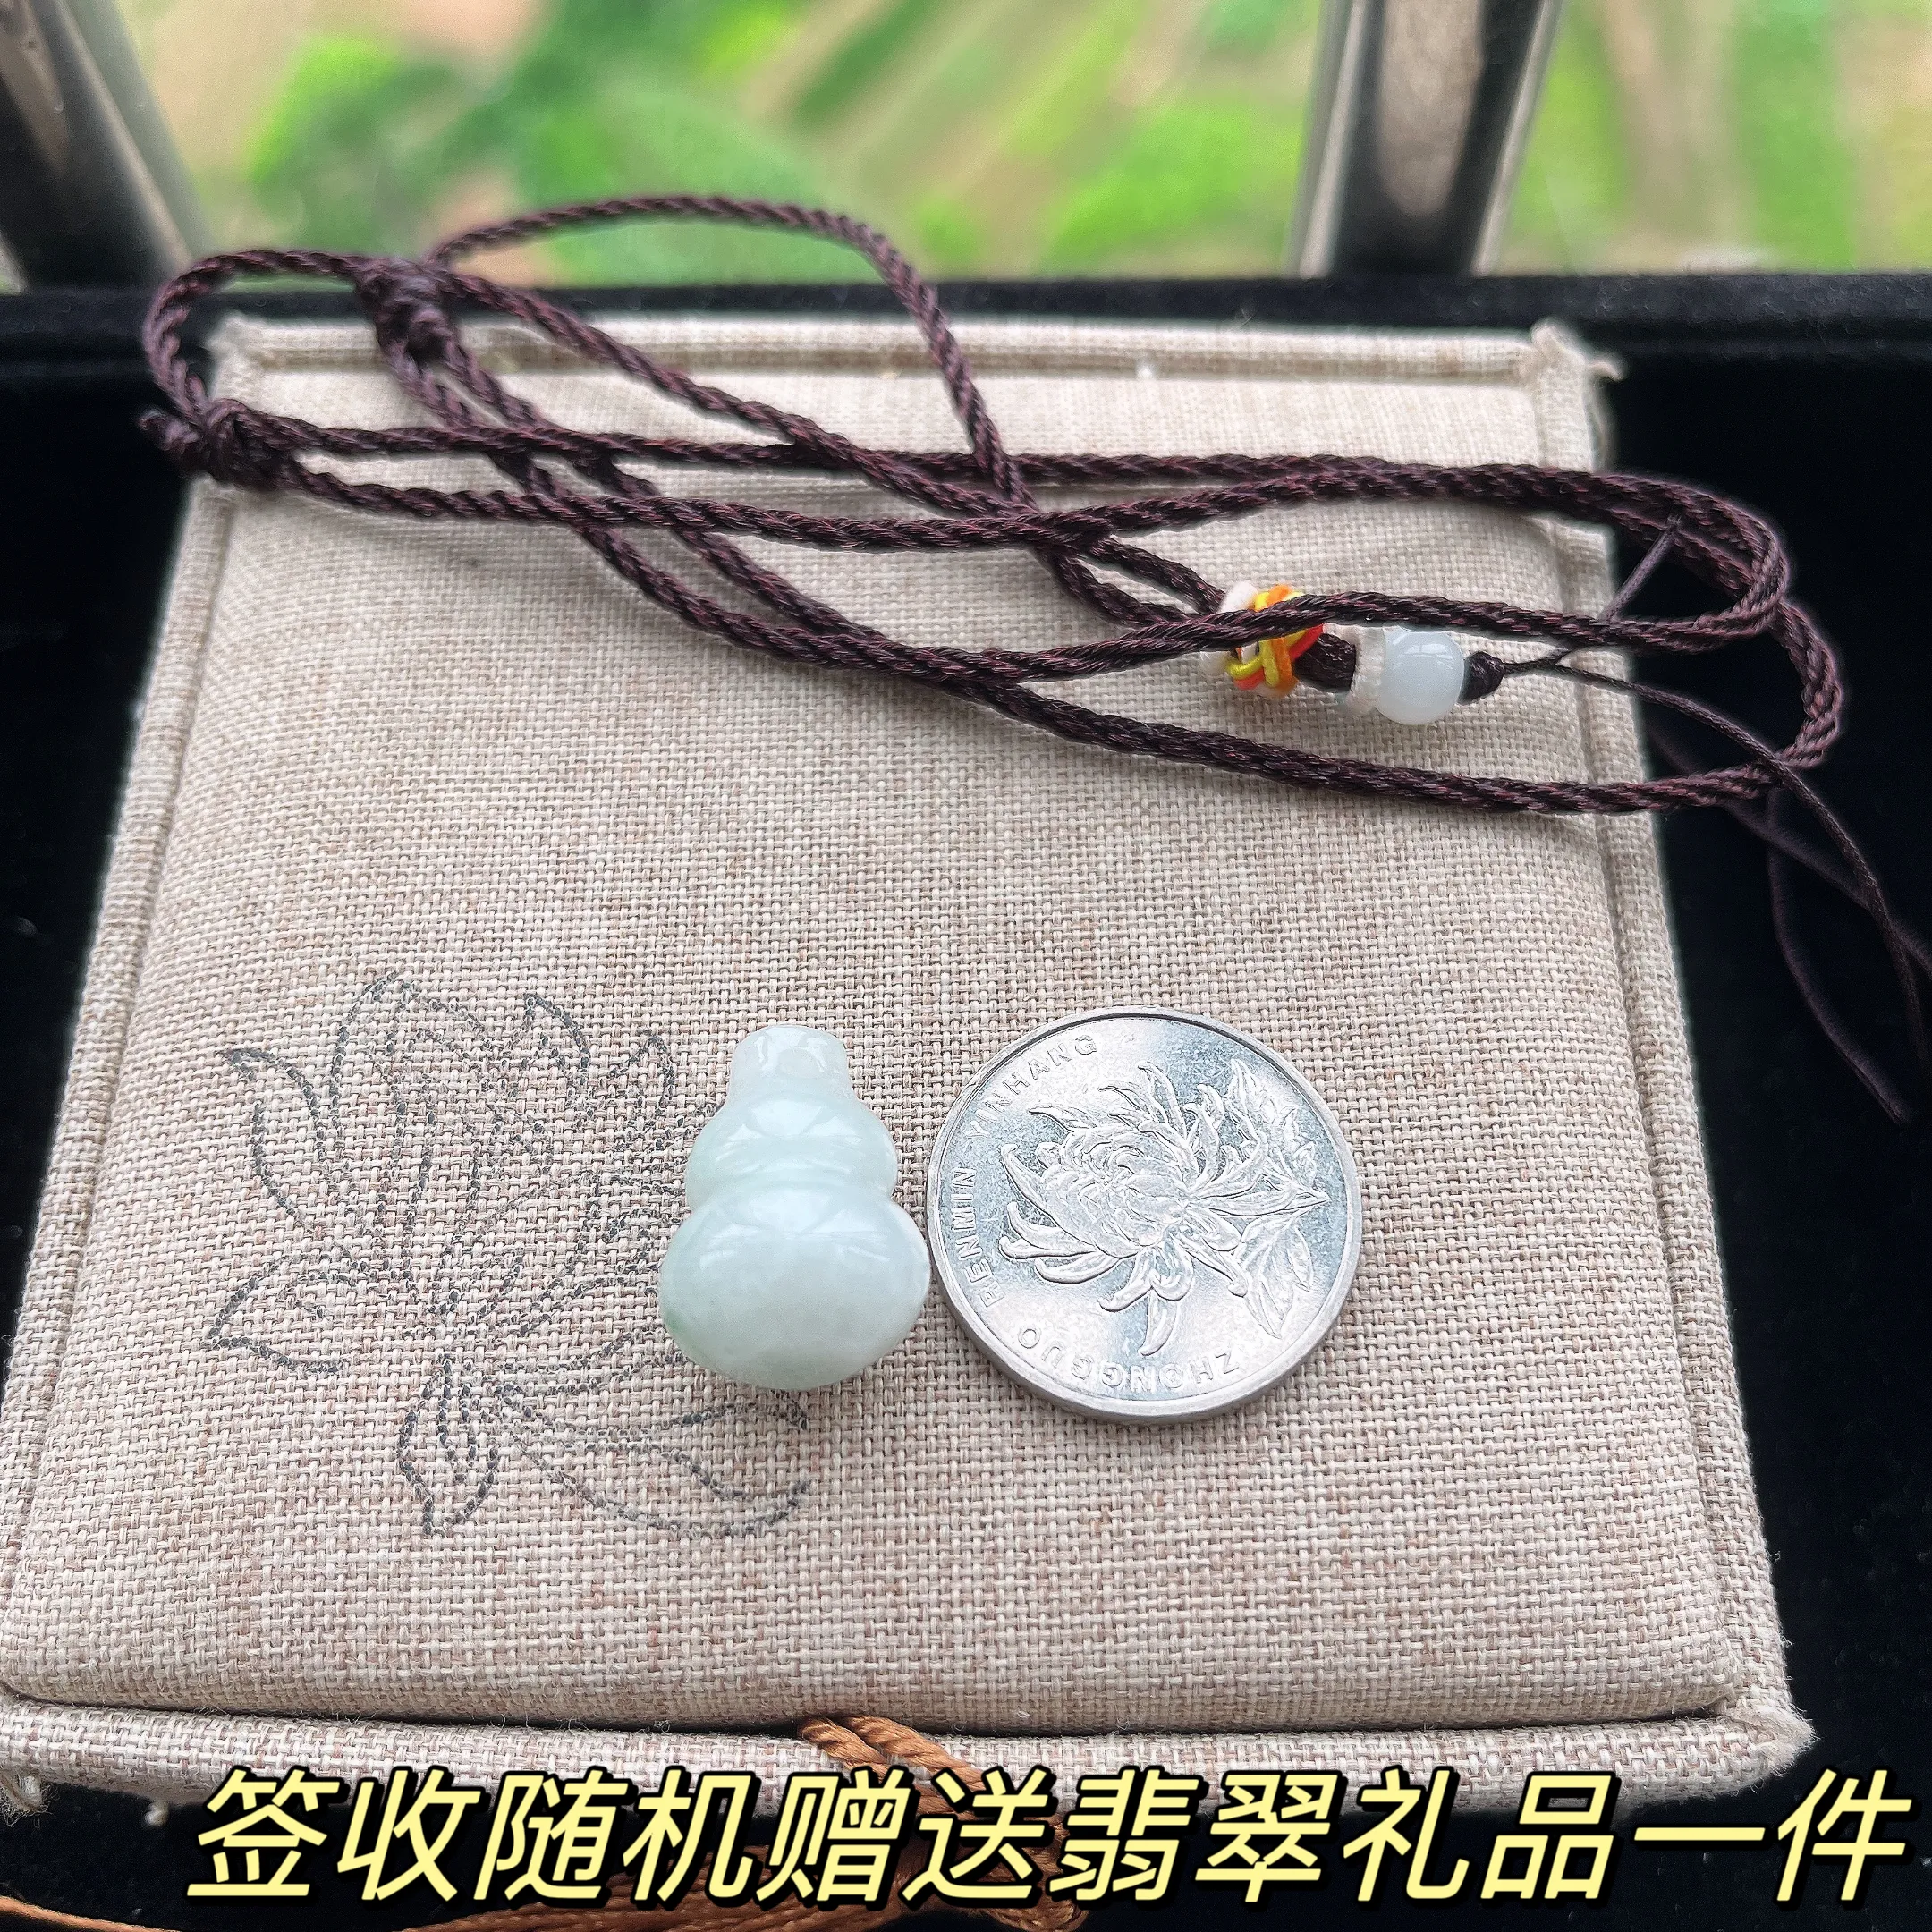 天然A货翡翠葫芦手链，尺寸 11.8-7.7，重量: 6.75g
4月20日